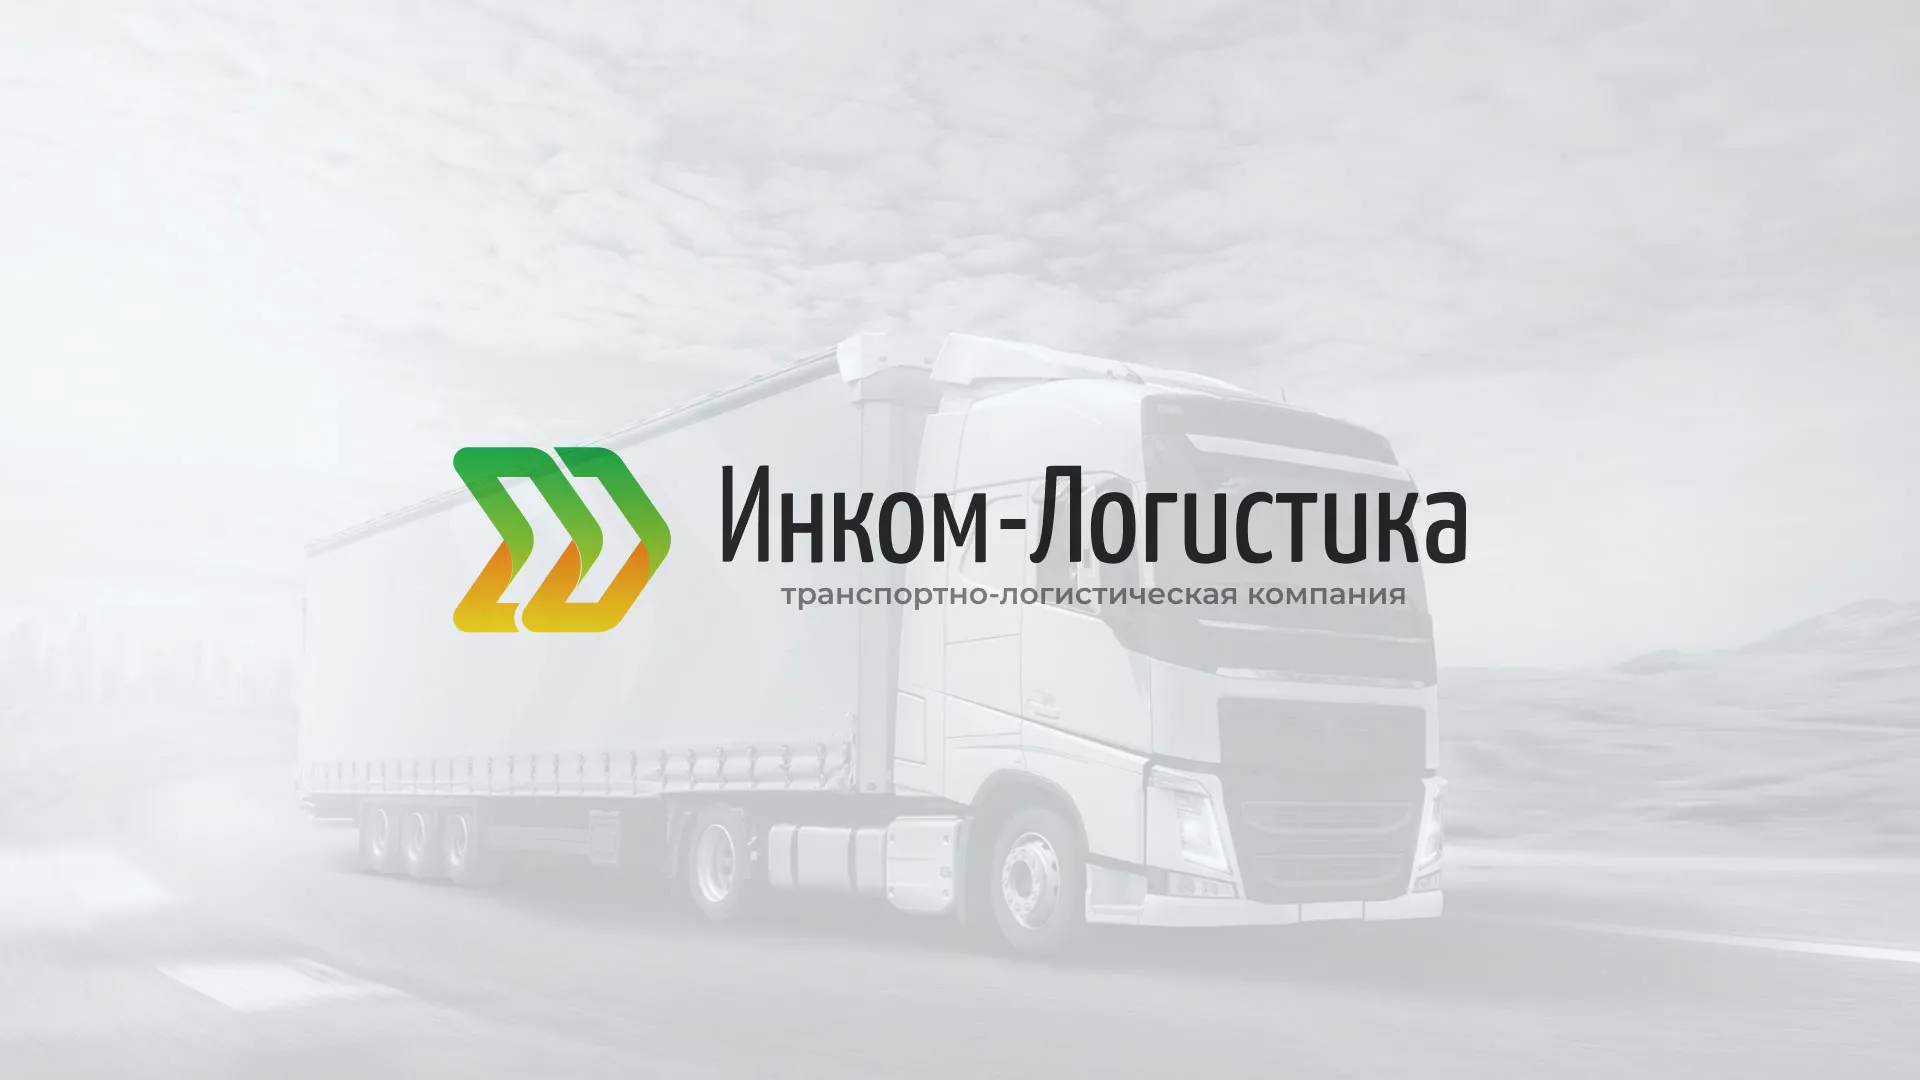 Разработка логотипа и сайта компании «Инком-Логистика» в Павловске